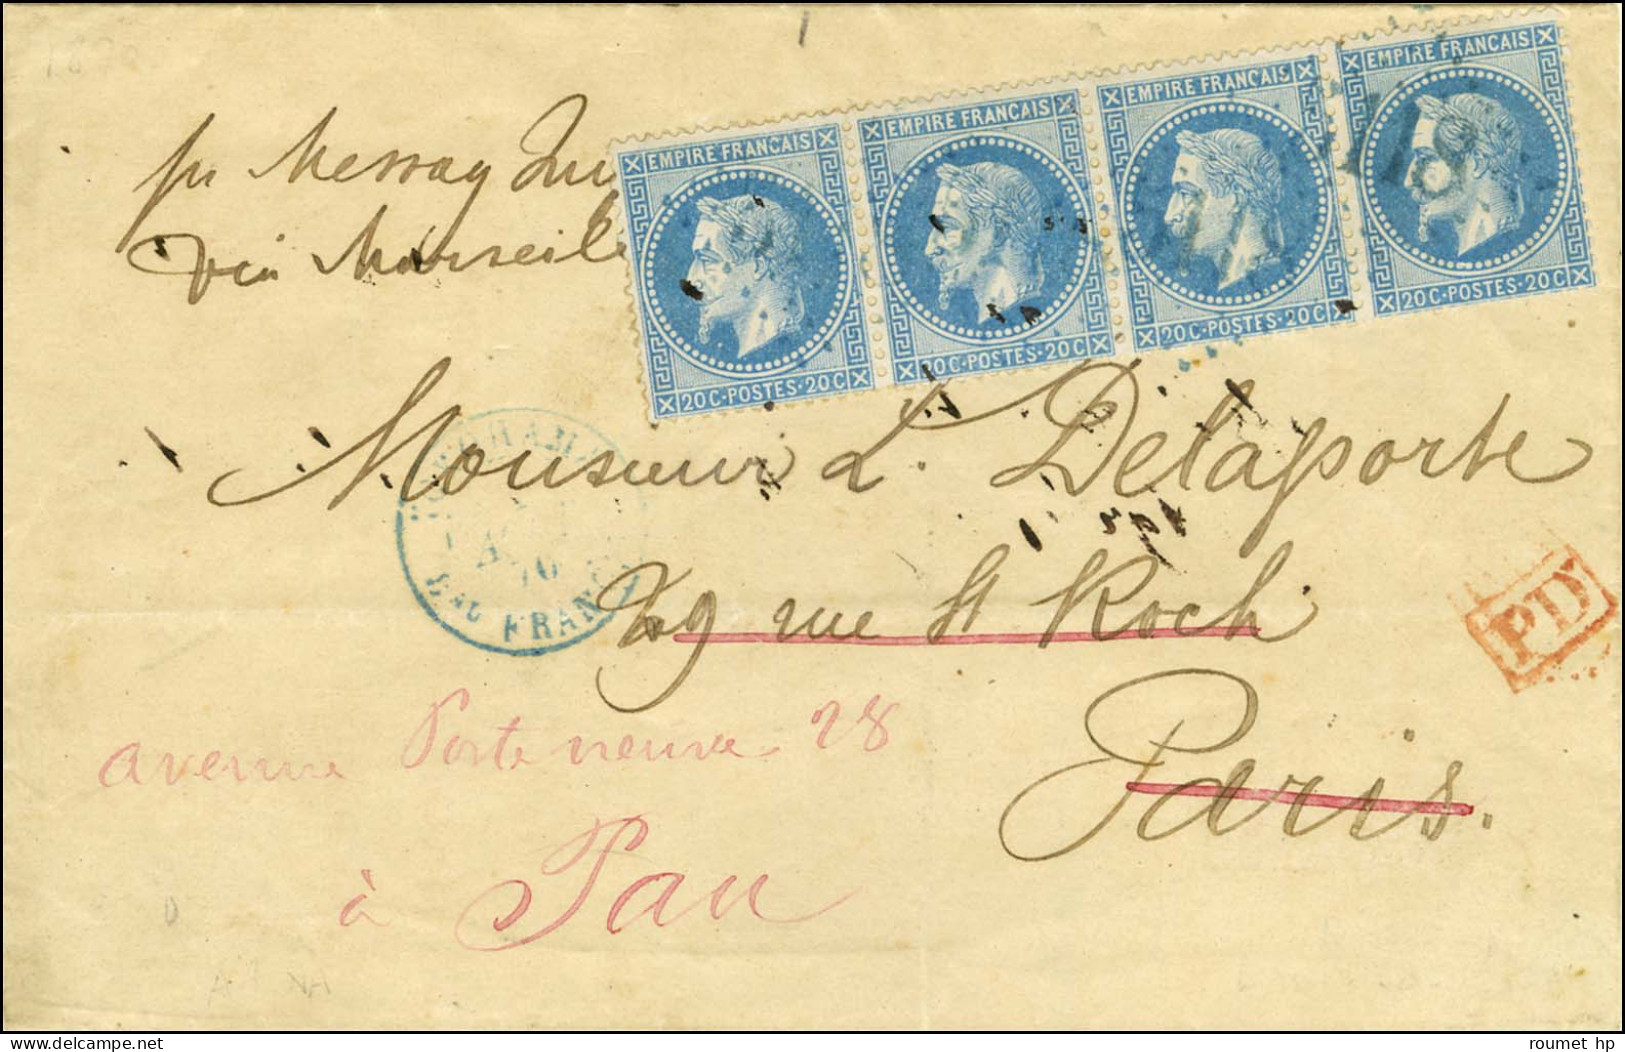 GC Bleu 5118 / N° 29 (bande De 4) Càd Bleu YOKOHAMA / Bau FRANCAIS 1 AOUT 70 Sur Lettre Pour Paris Par La Voie De Marsei - 1863-1870 Napoléon III. Laure